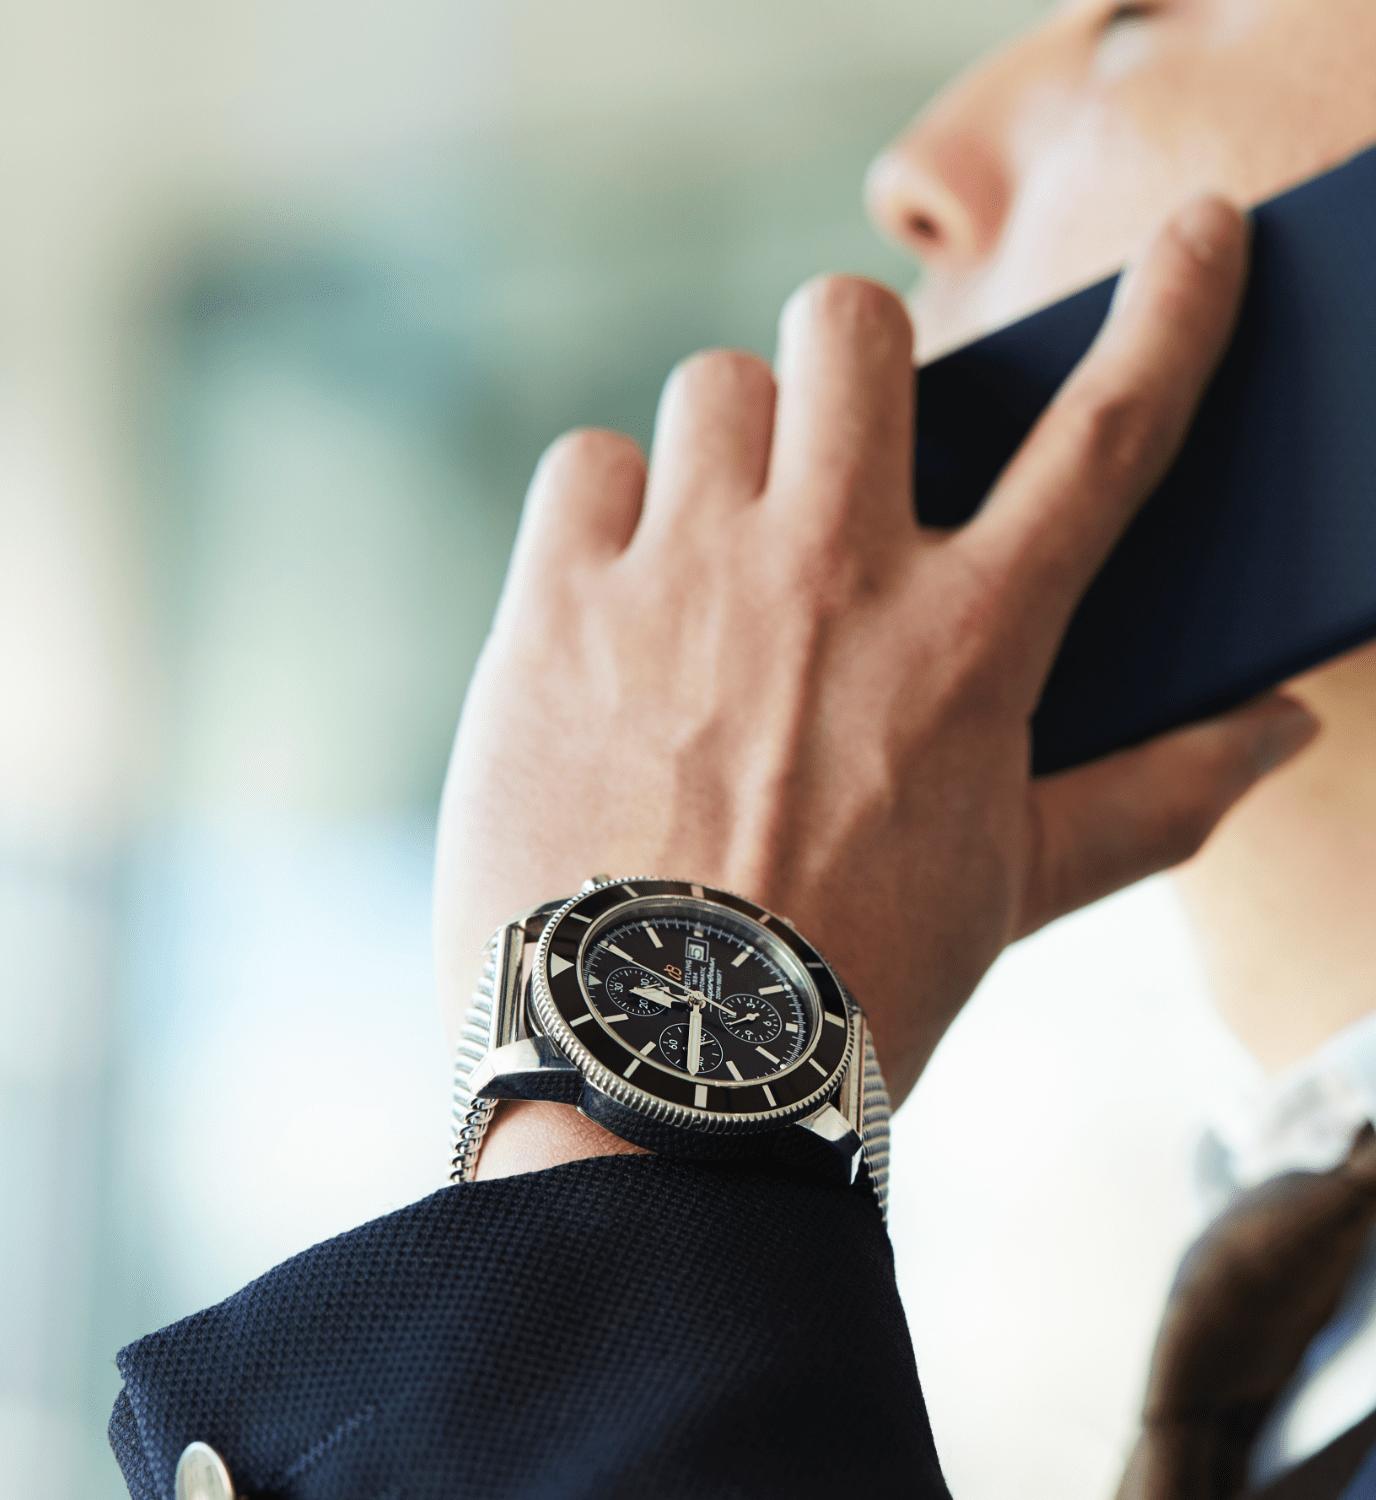 腕時計は社会人になって初めての大きな買い物で、常に身につけている。